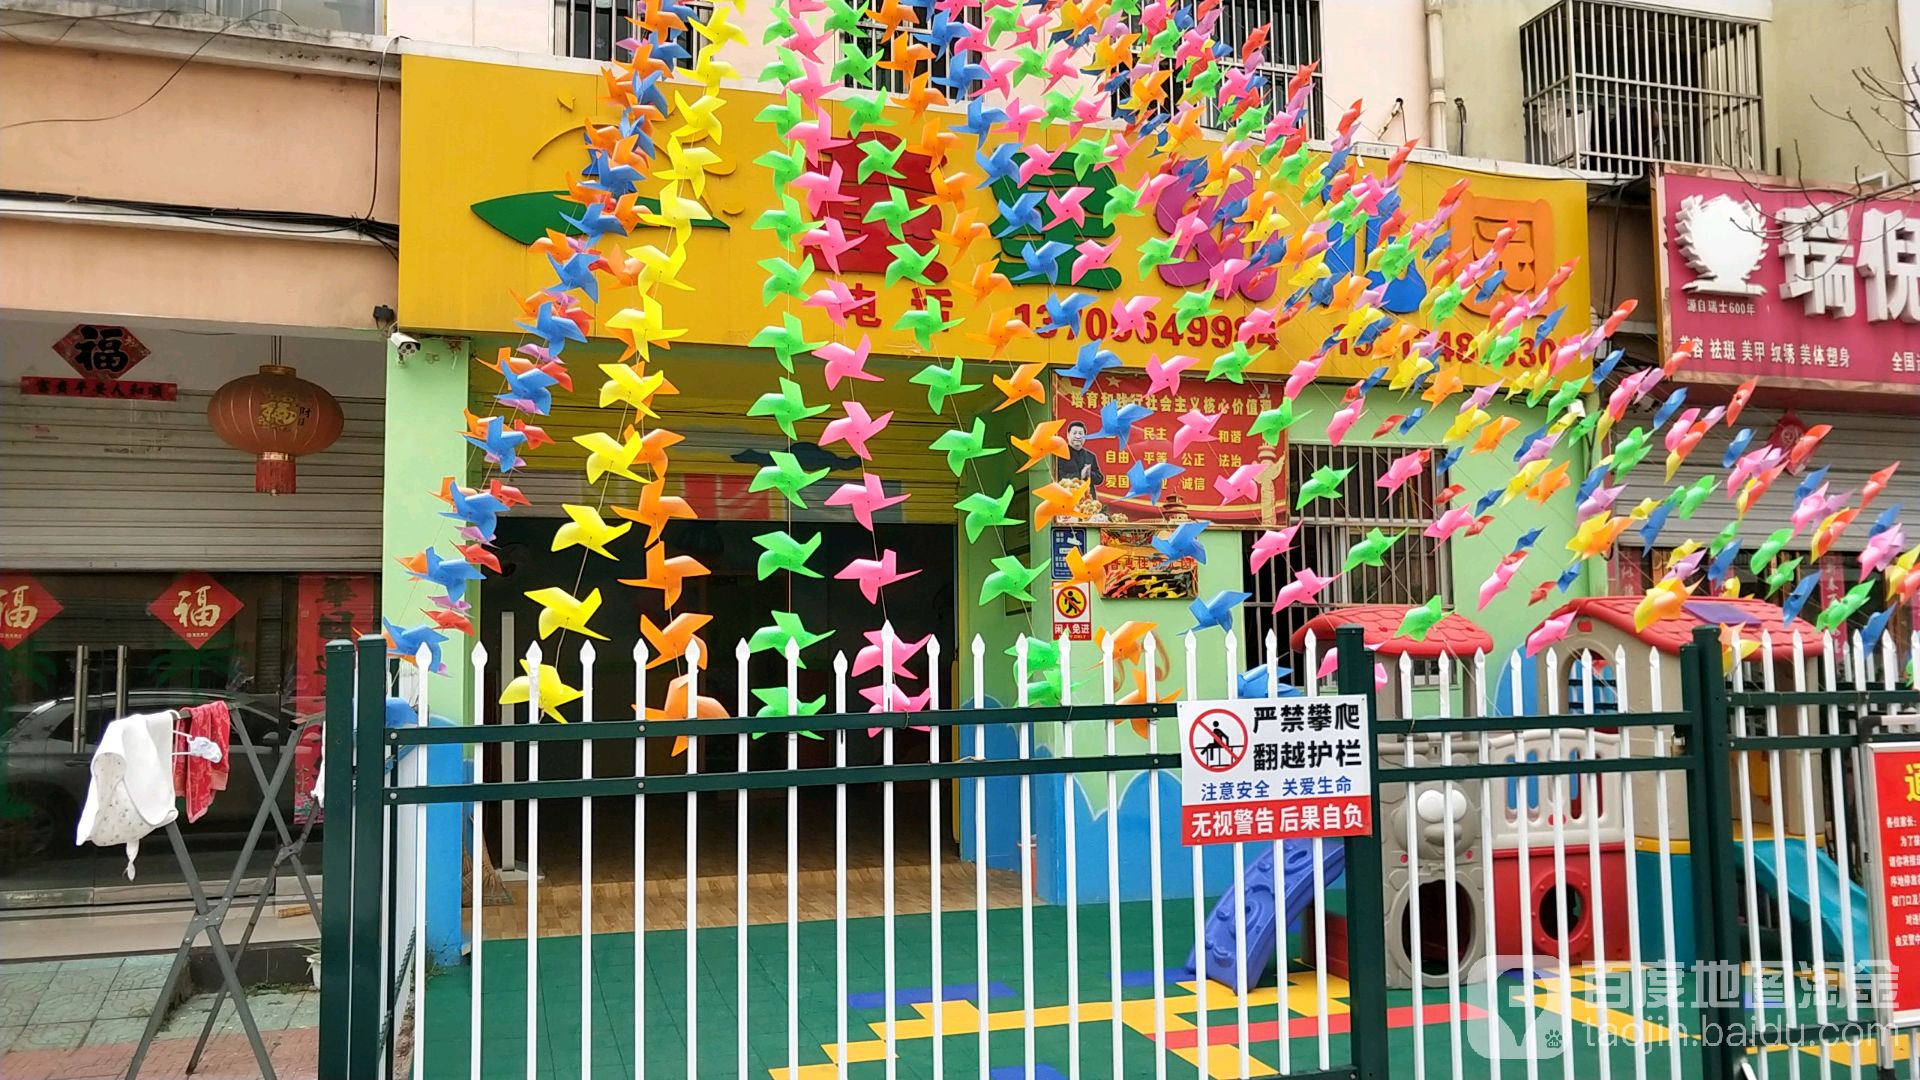 童星双语艺术幼儿园(皋城东路)的图片